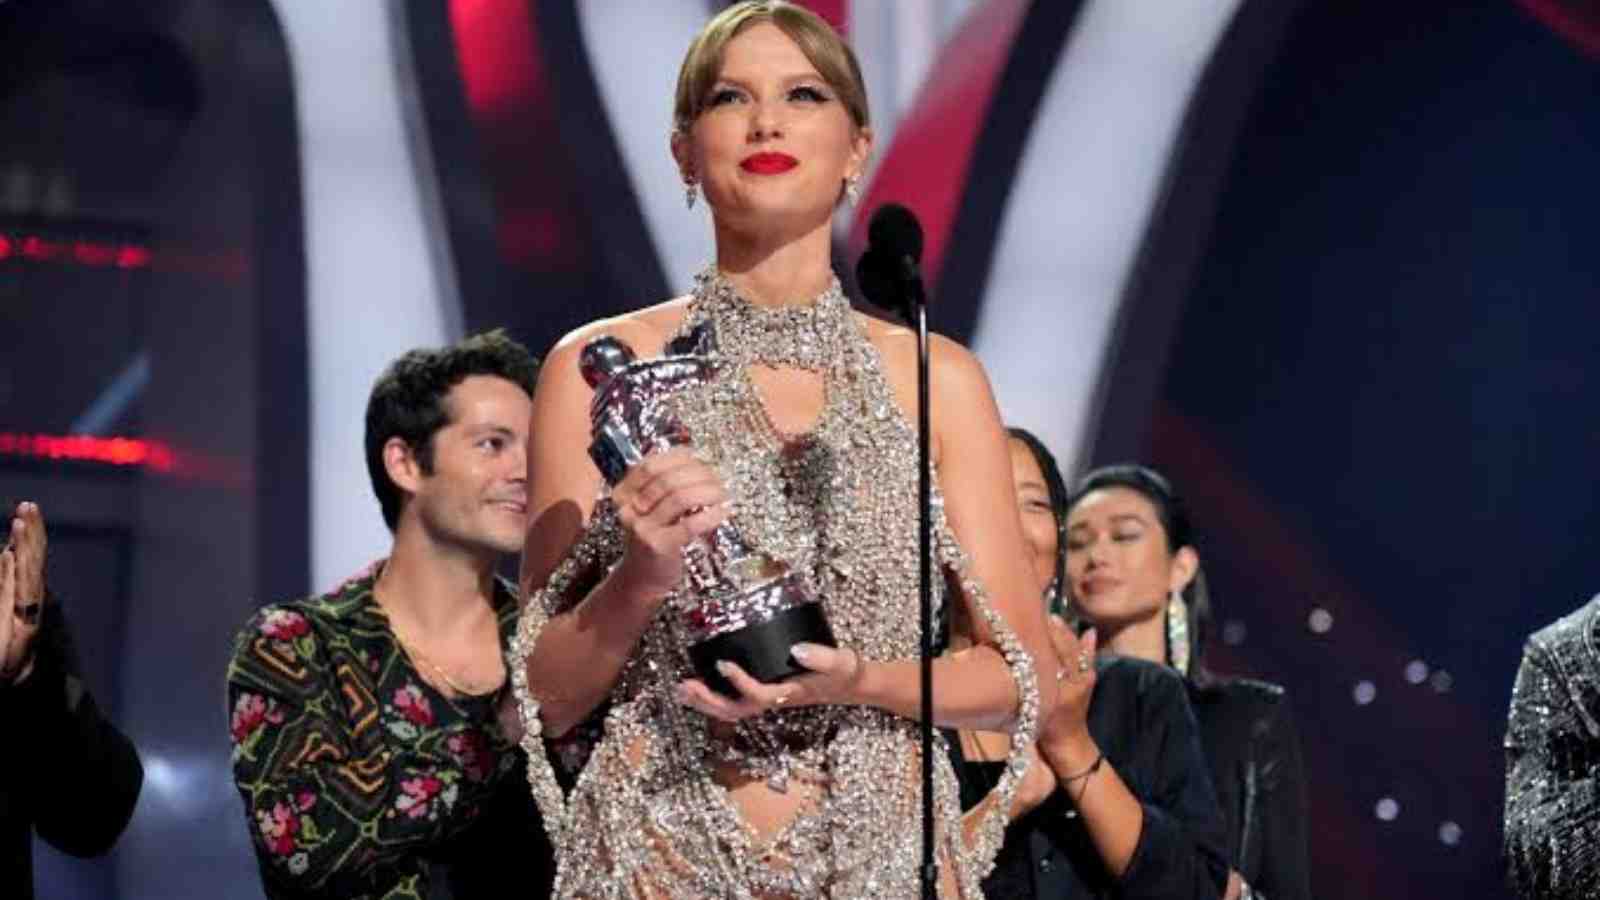 Taylor Swift during MTV VMAs 2022